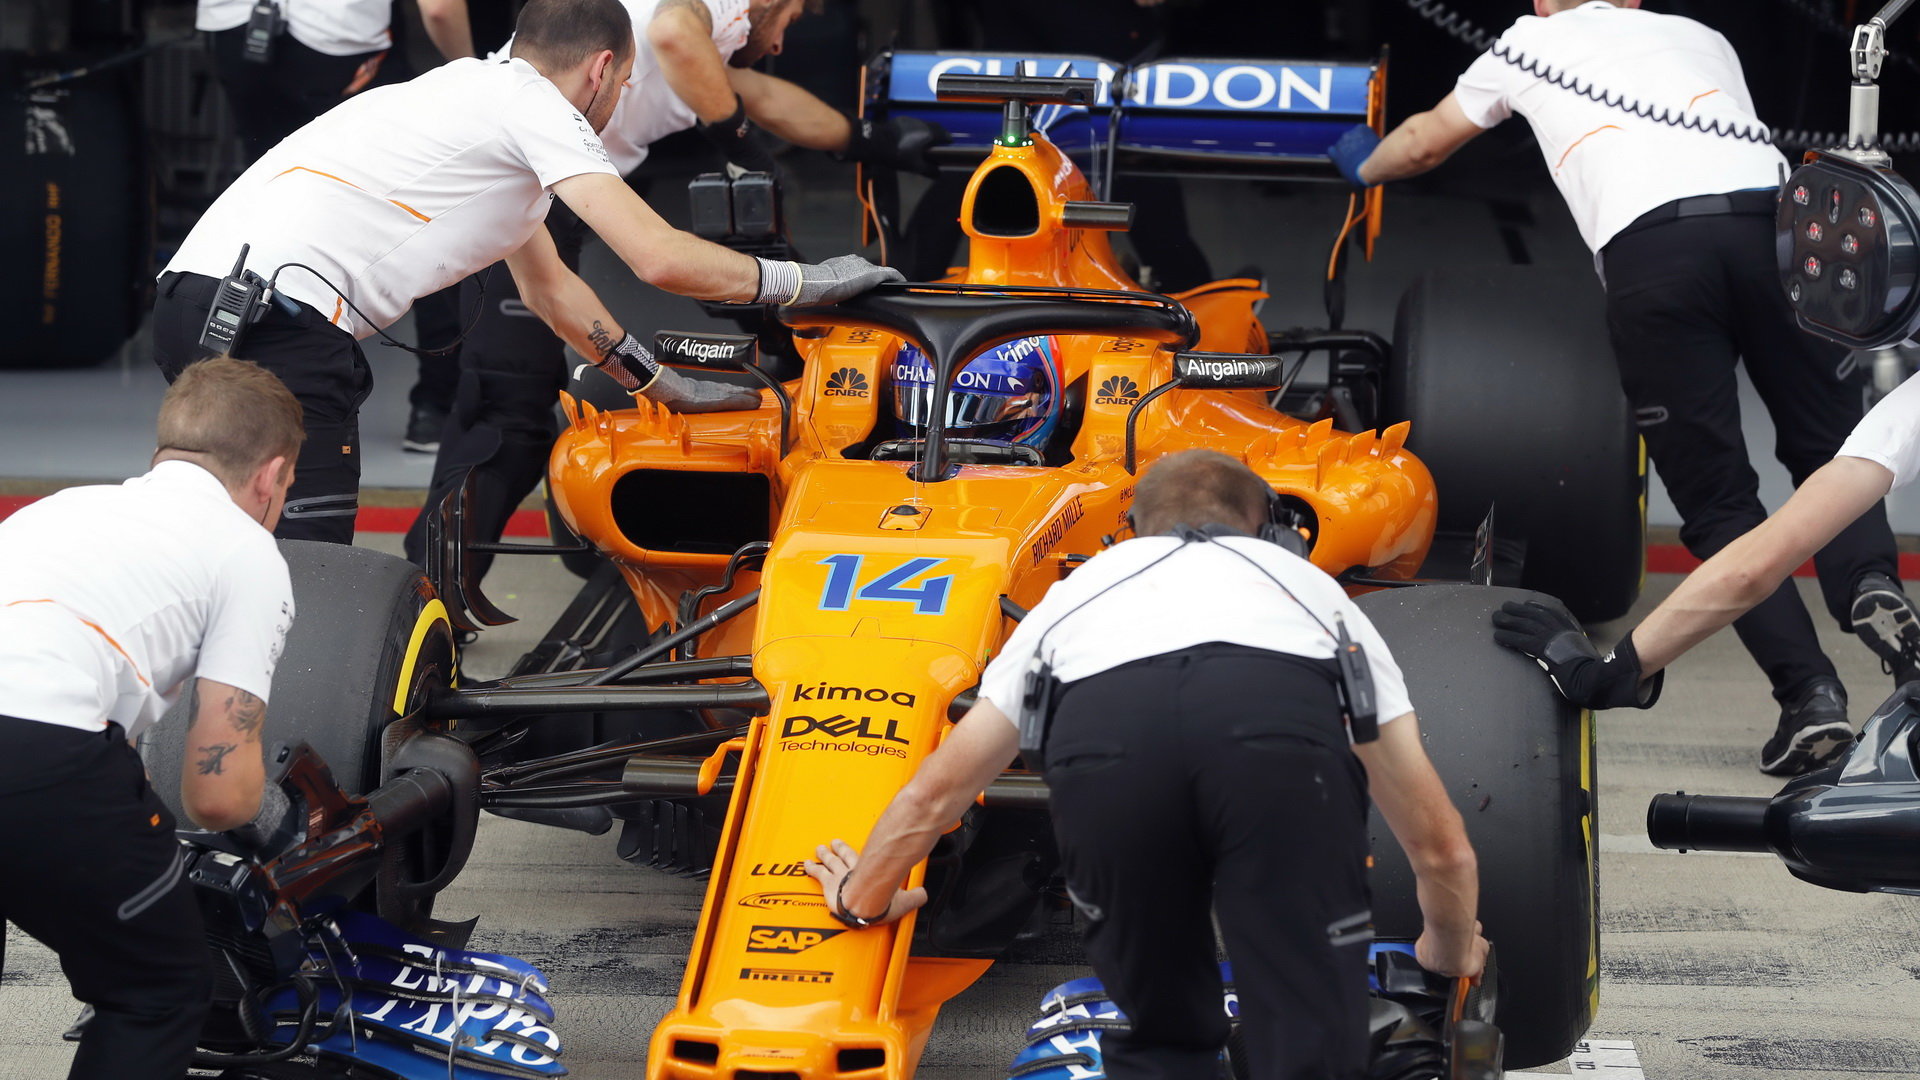 Alonso cílem neprojel, skončil o dvě kola dříve v garáži poté, co u něj McLaren v datech zaznamenal možný problém s převodovkou